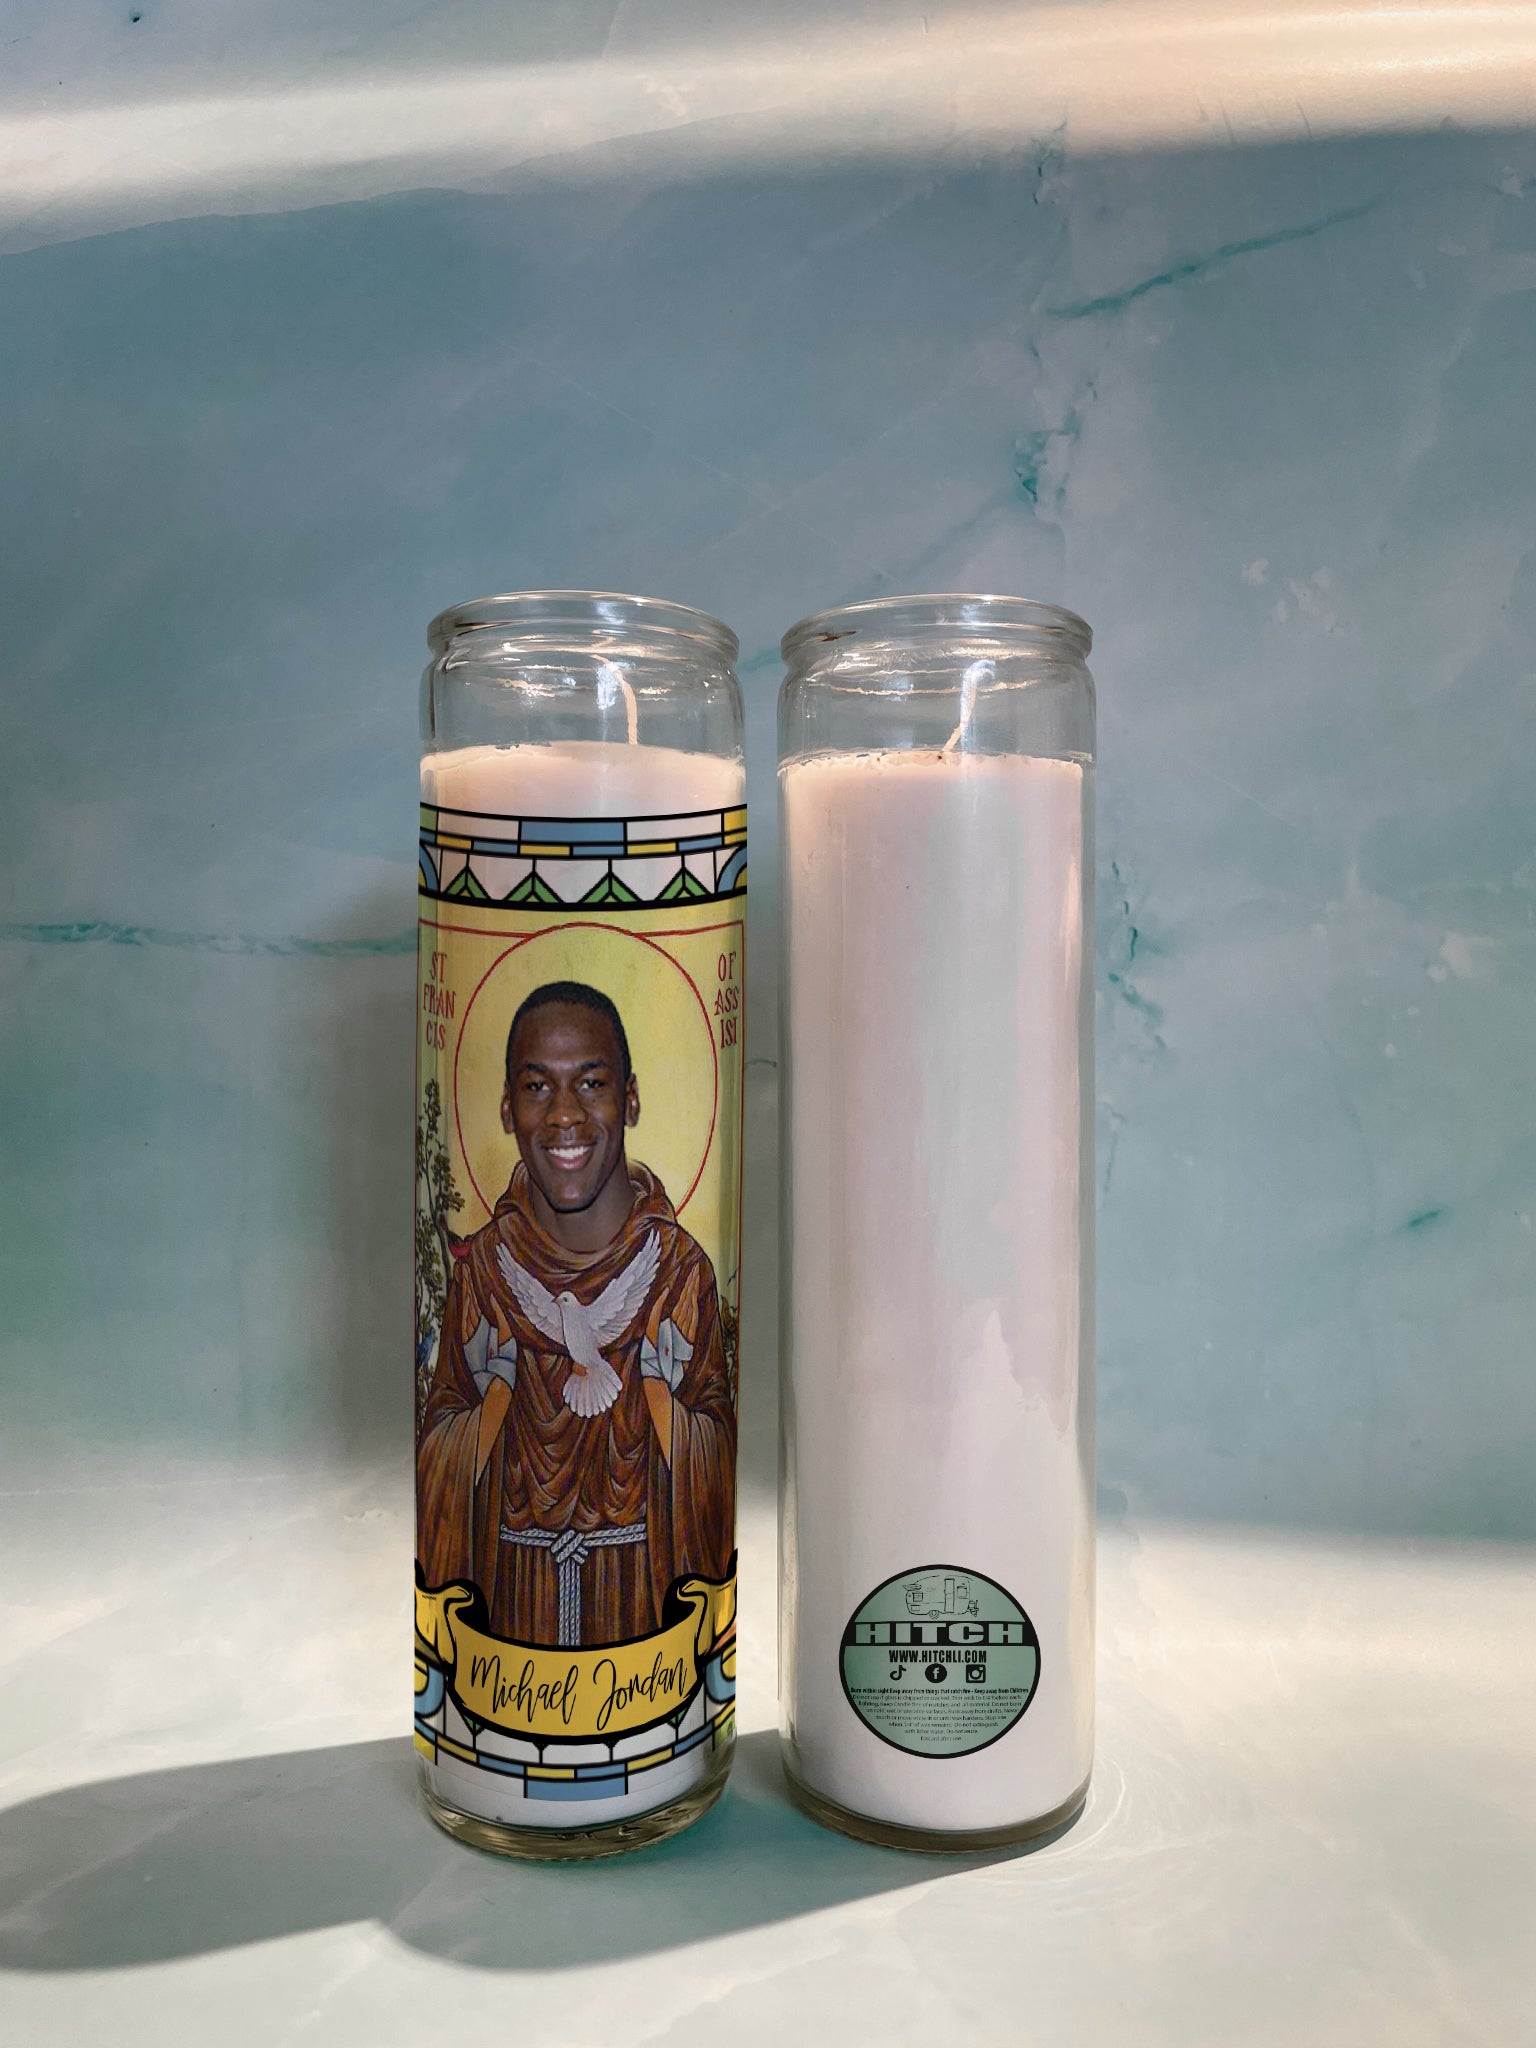 Michael Jordan Original Prayer Candle